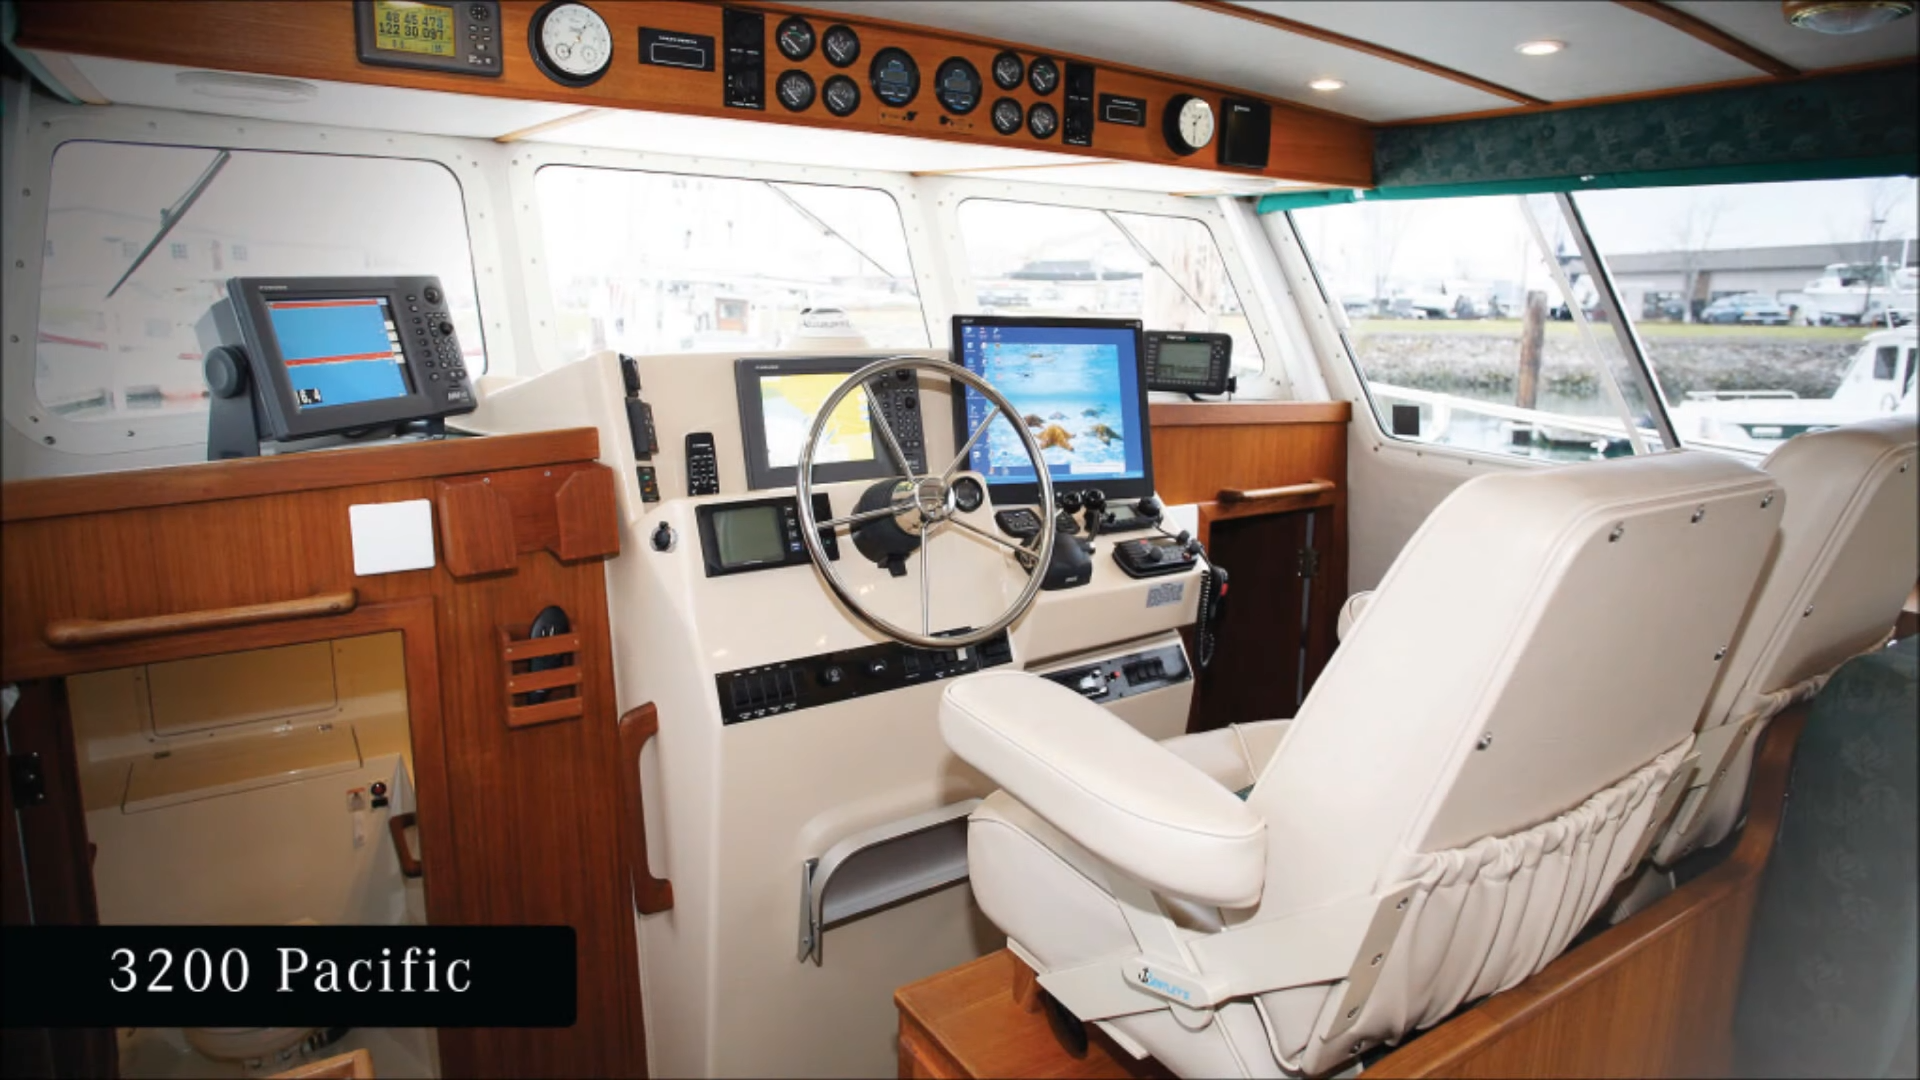 Luxury interior of Seasport 3200 catamaran